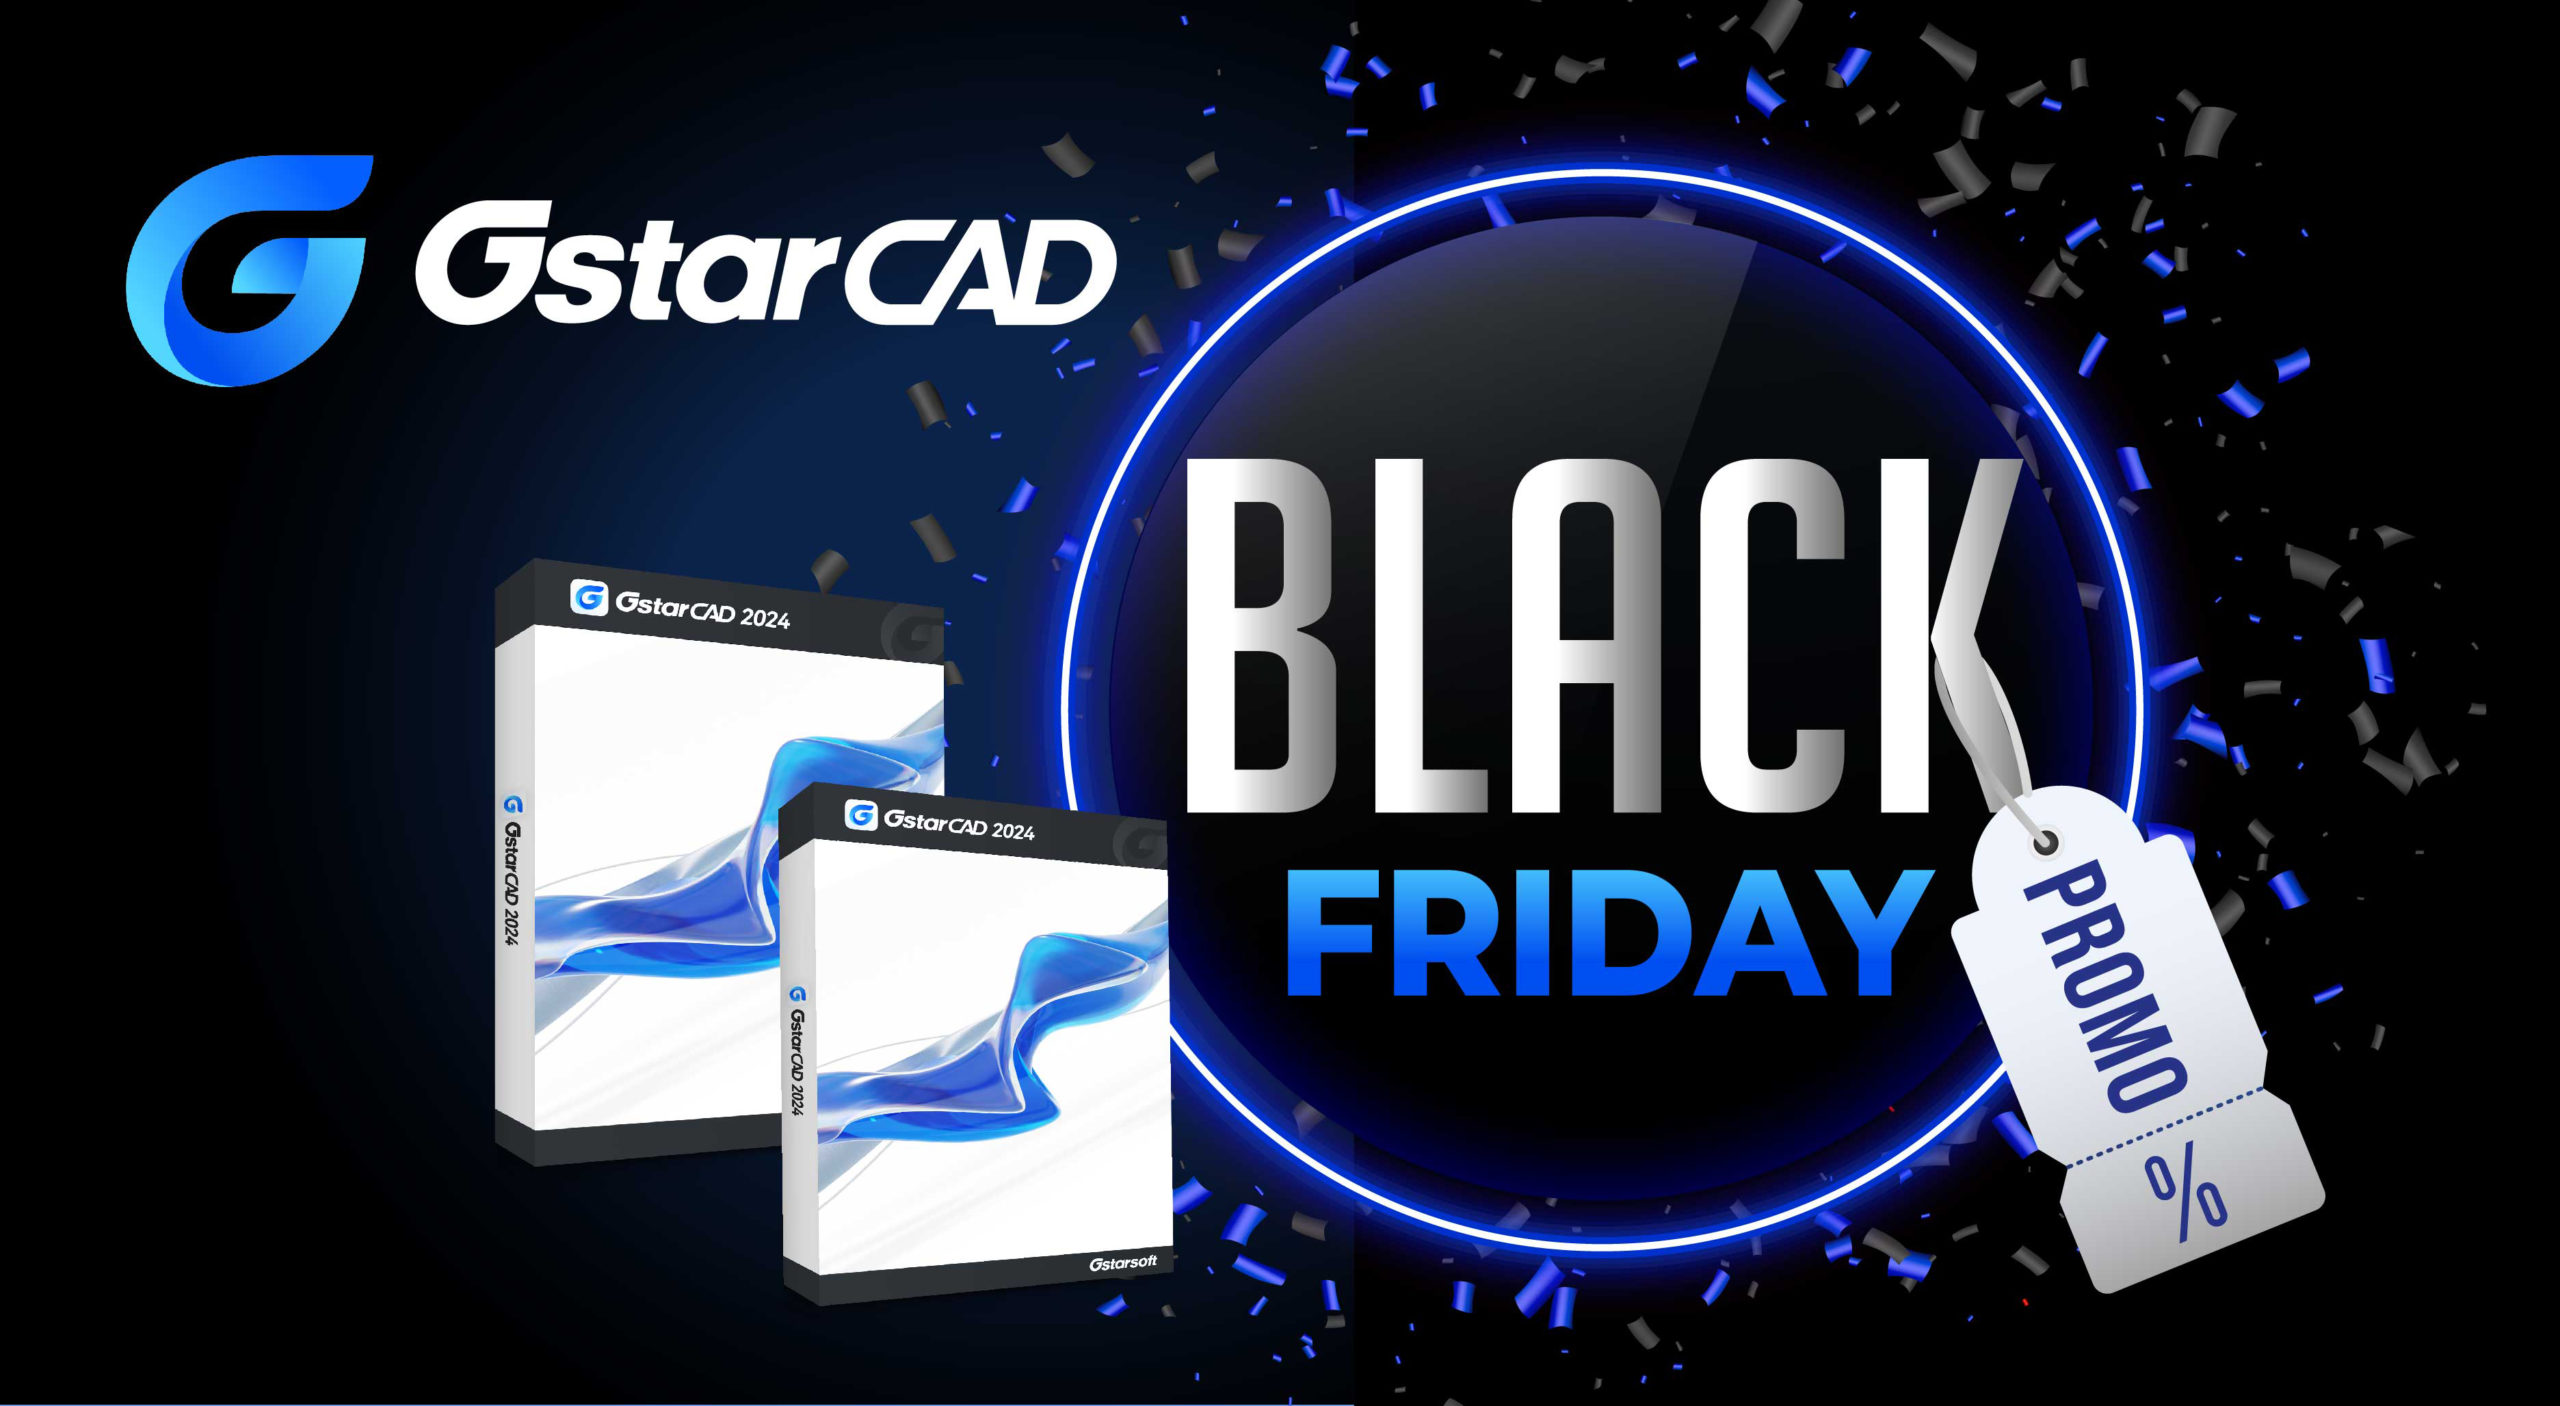 Black Friday a început! Reduceri legendare la licențele permanente și la actualizările GstarCAD!